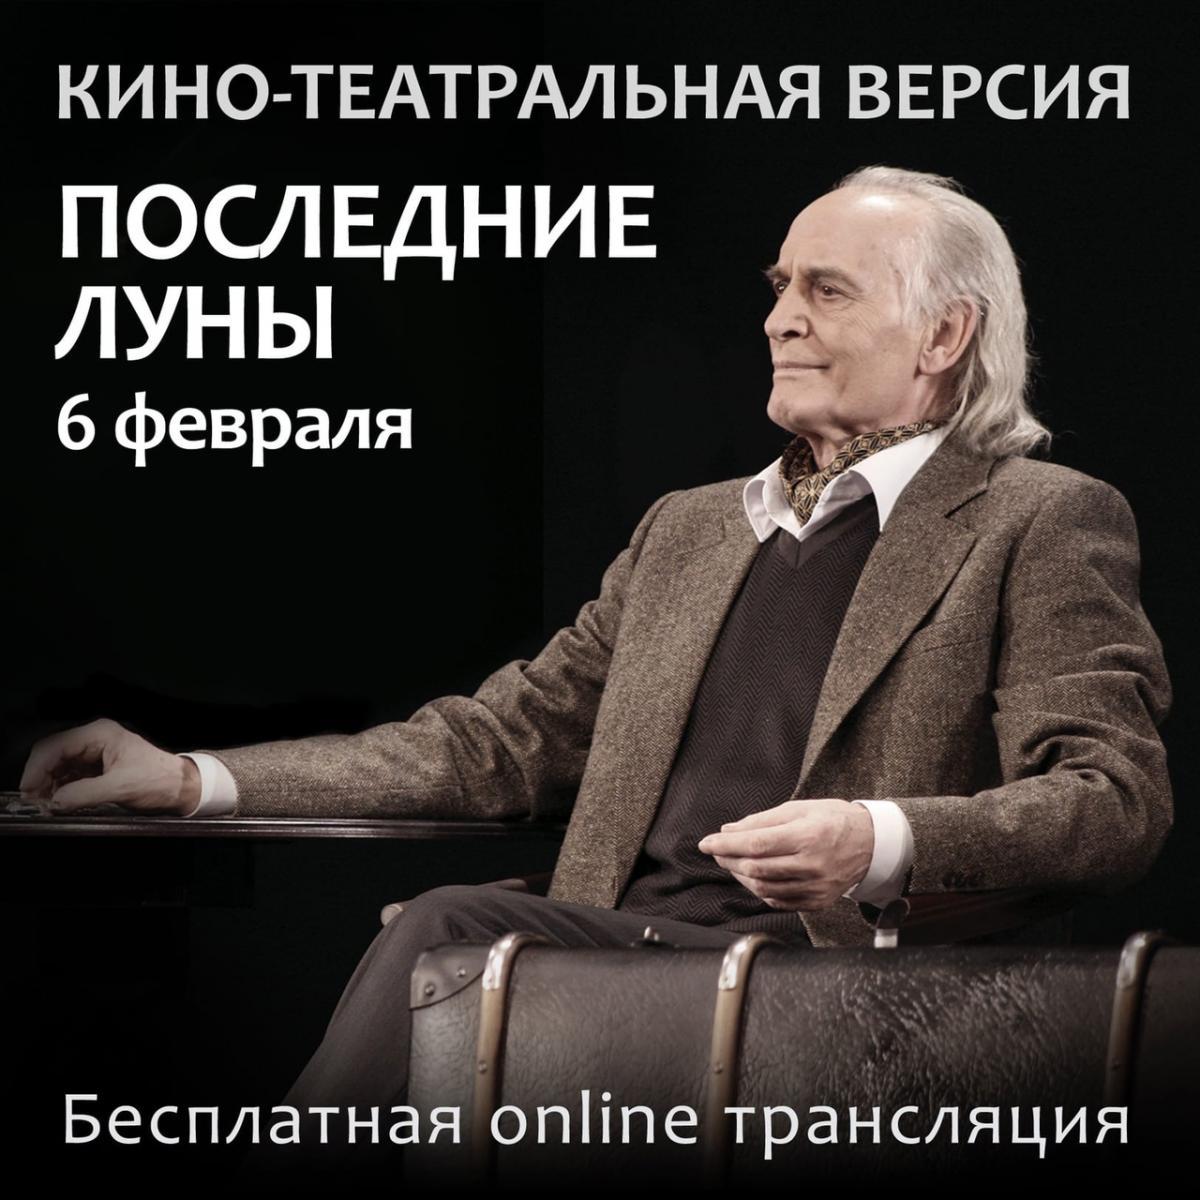 Театр Вахтангова добавил в афишу онлайн-трансляции спектаклей, которые стали последними театральными ролями Василия Ланового